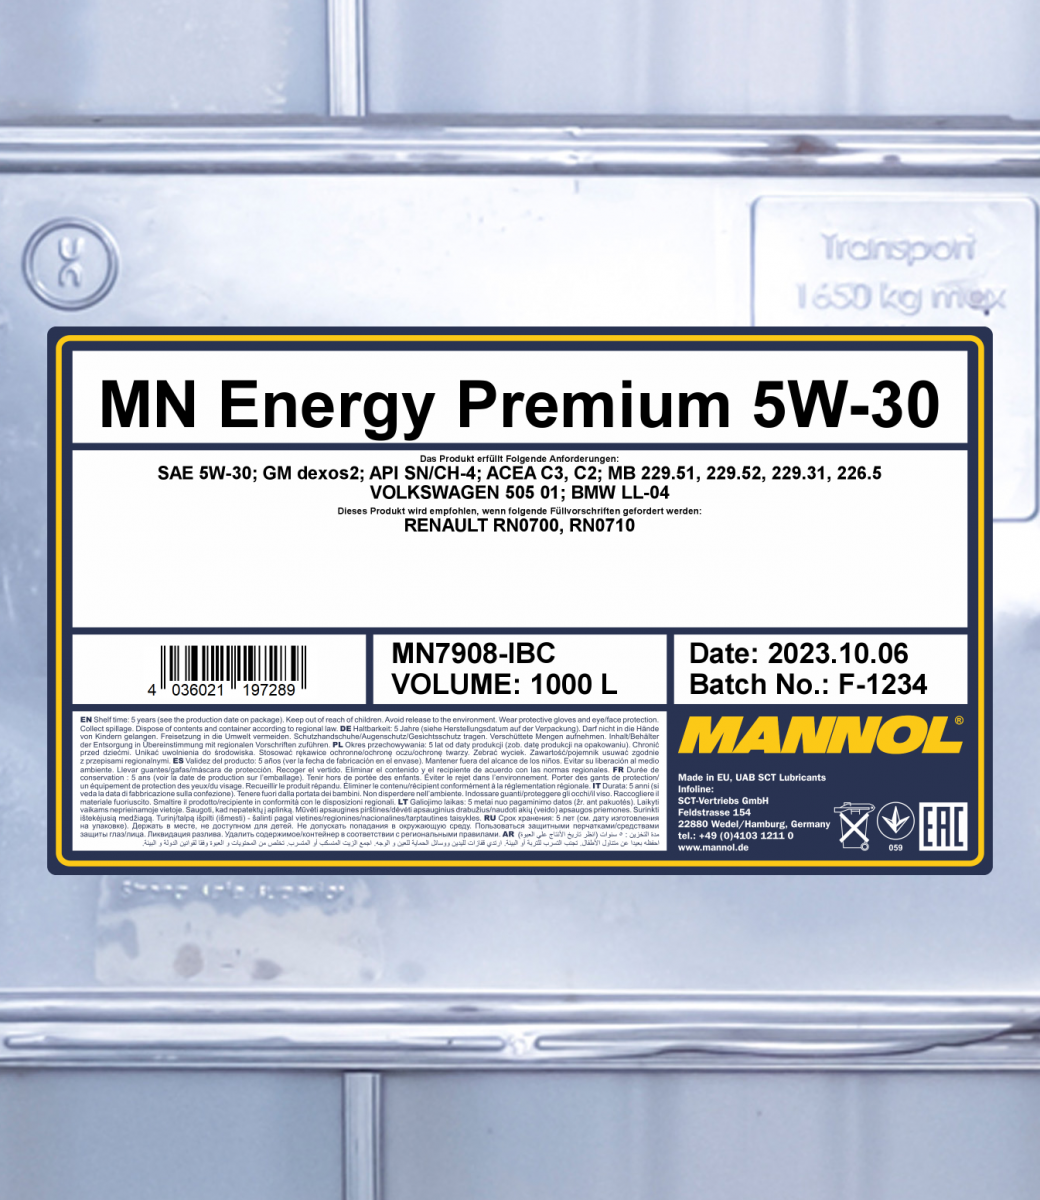 Mannol Energy Premium 5W-30 (5 l) Erfahrungen 4.2/5 Sternen